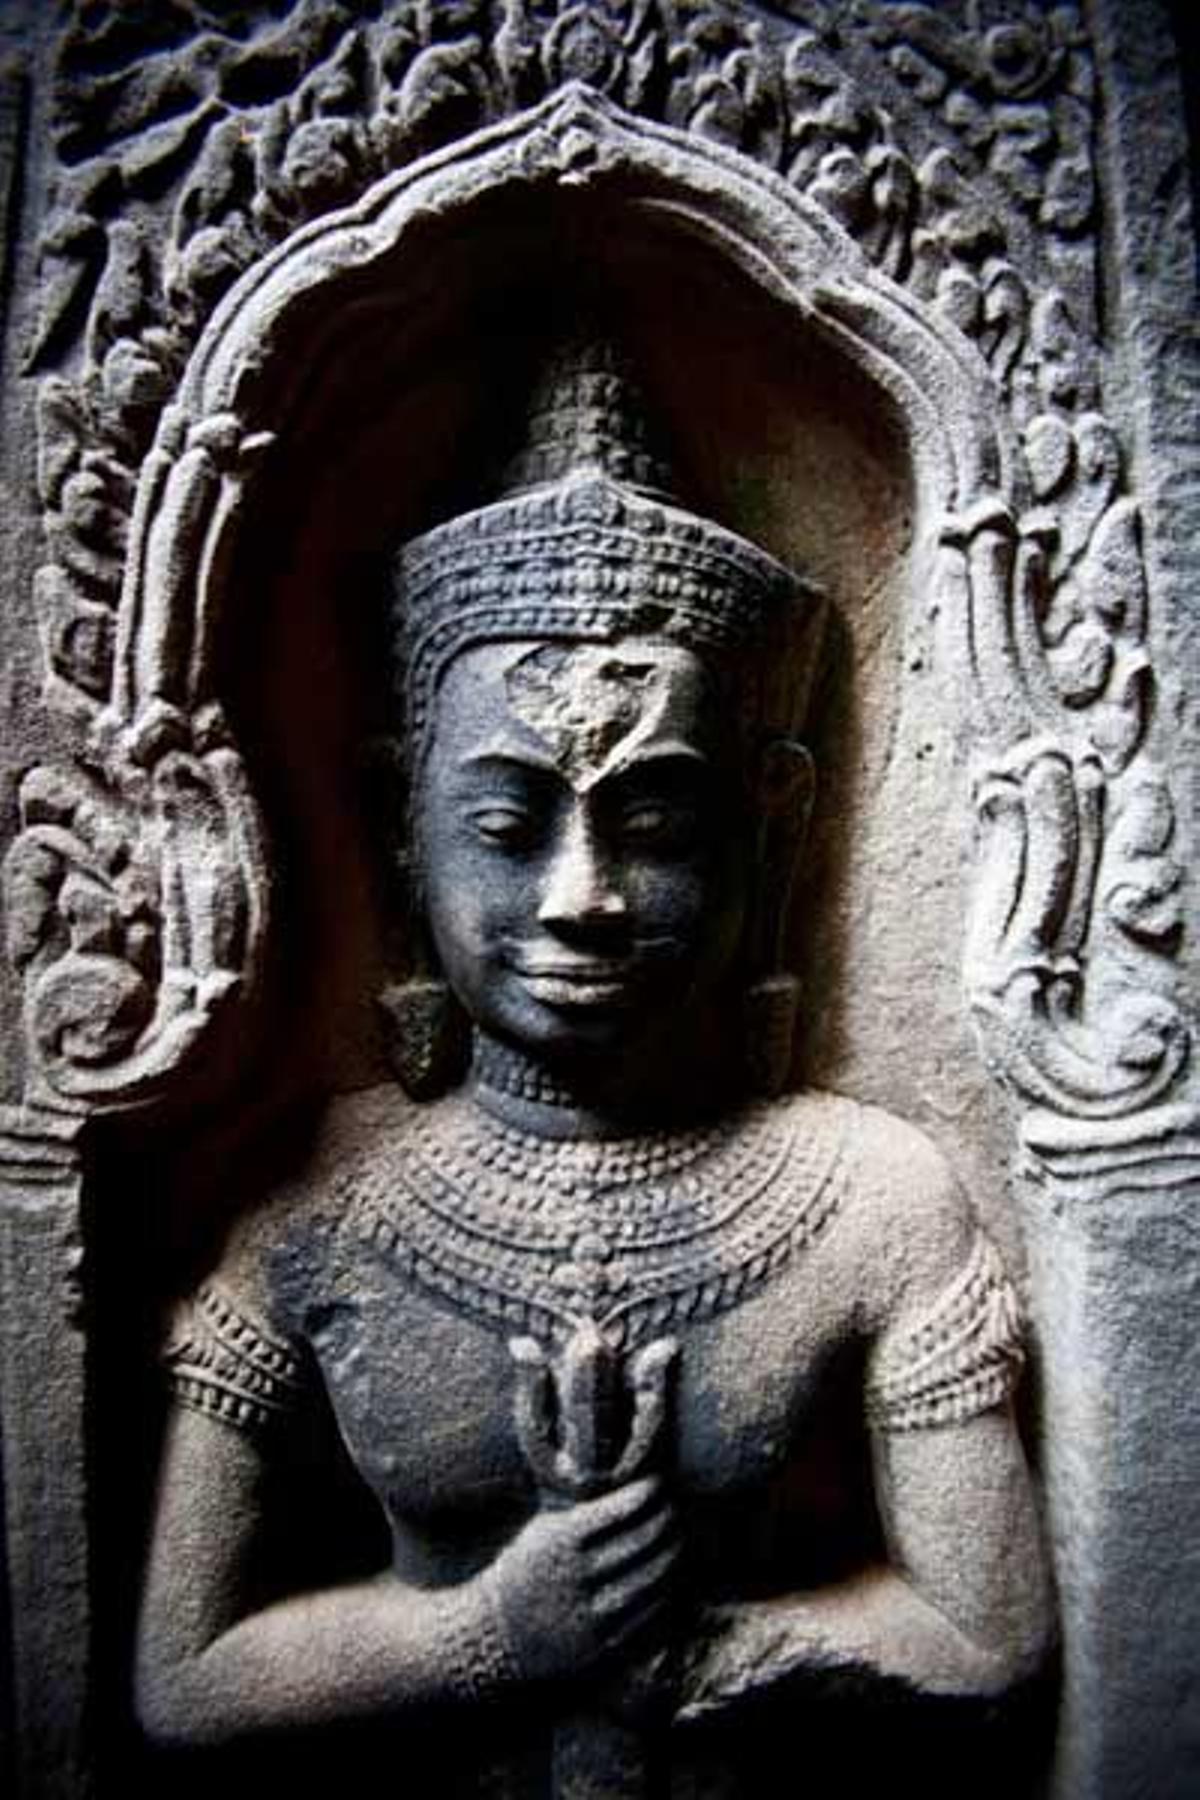 El complejo de Angkor Wat tuvo significado religiosos desde su creación en el siglo XII.